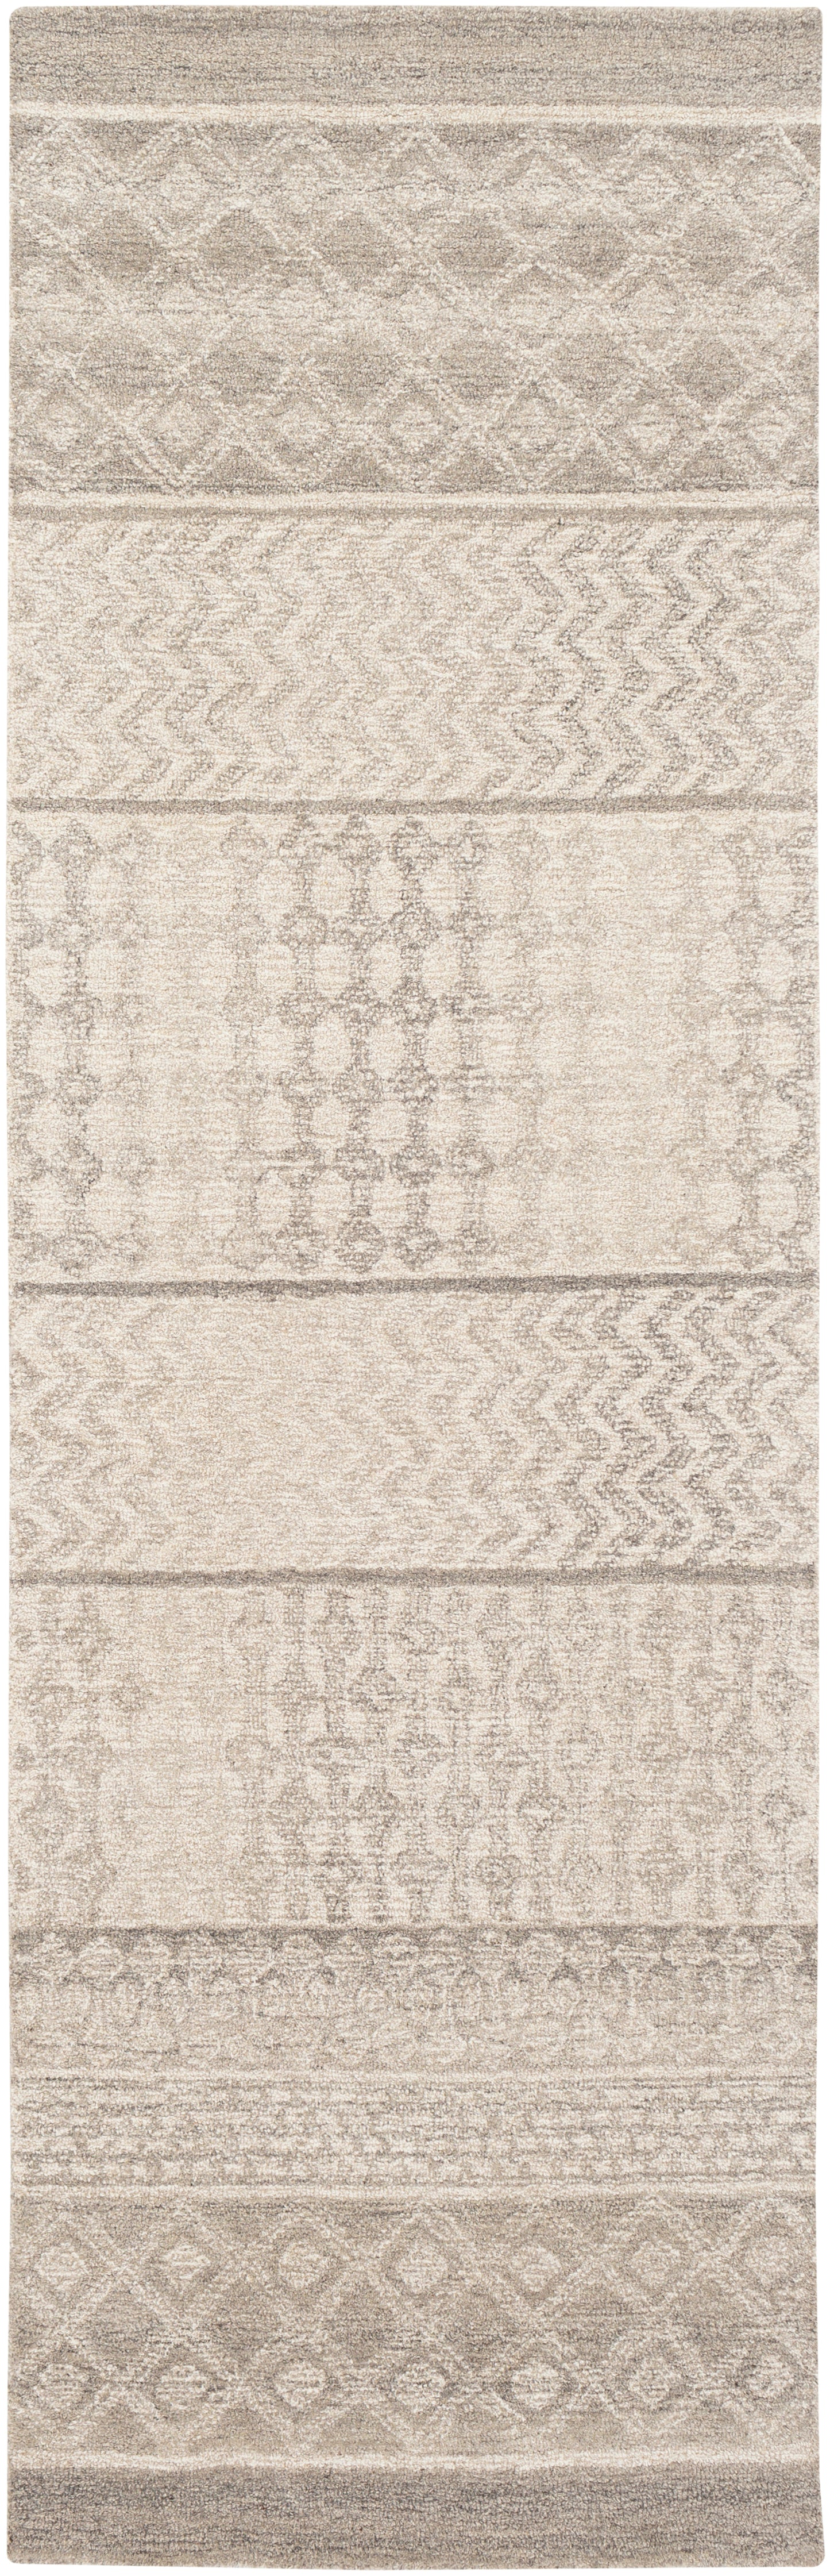 Maroc 23453 Hand Tufted Wool Indoor Area Rug by Surya Rugs